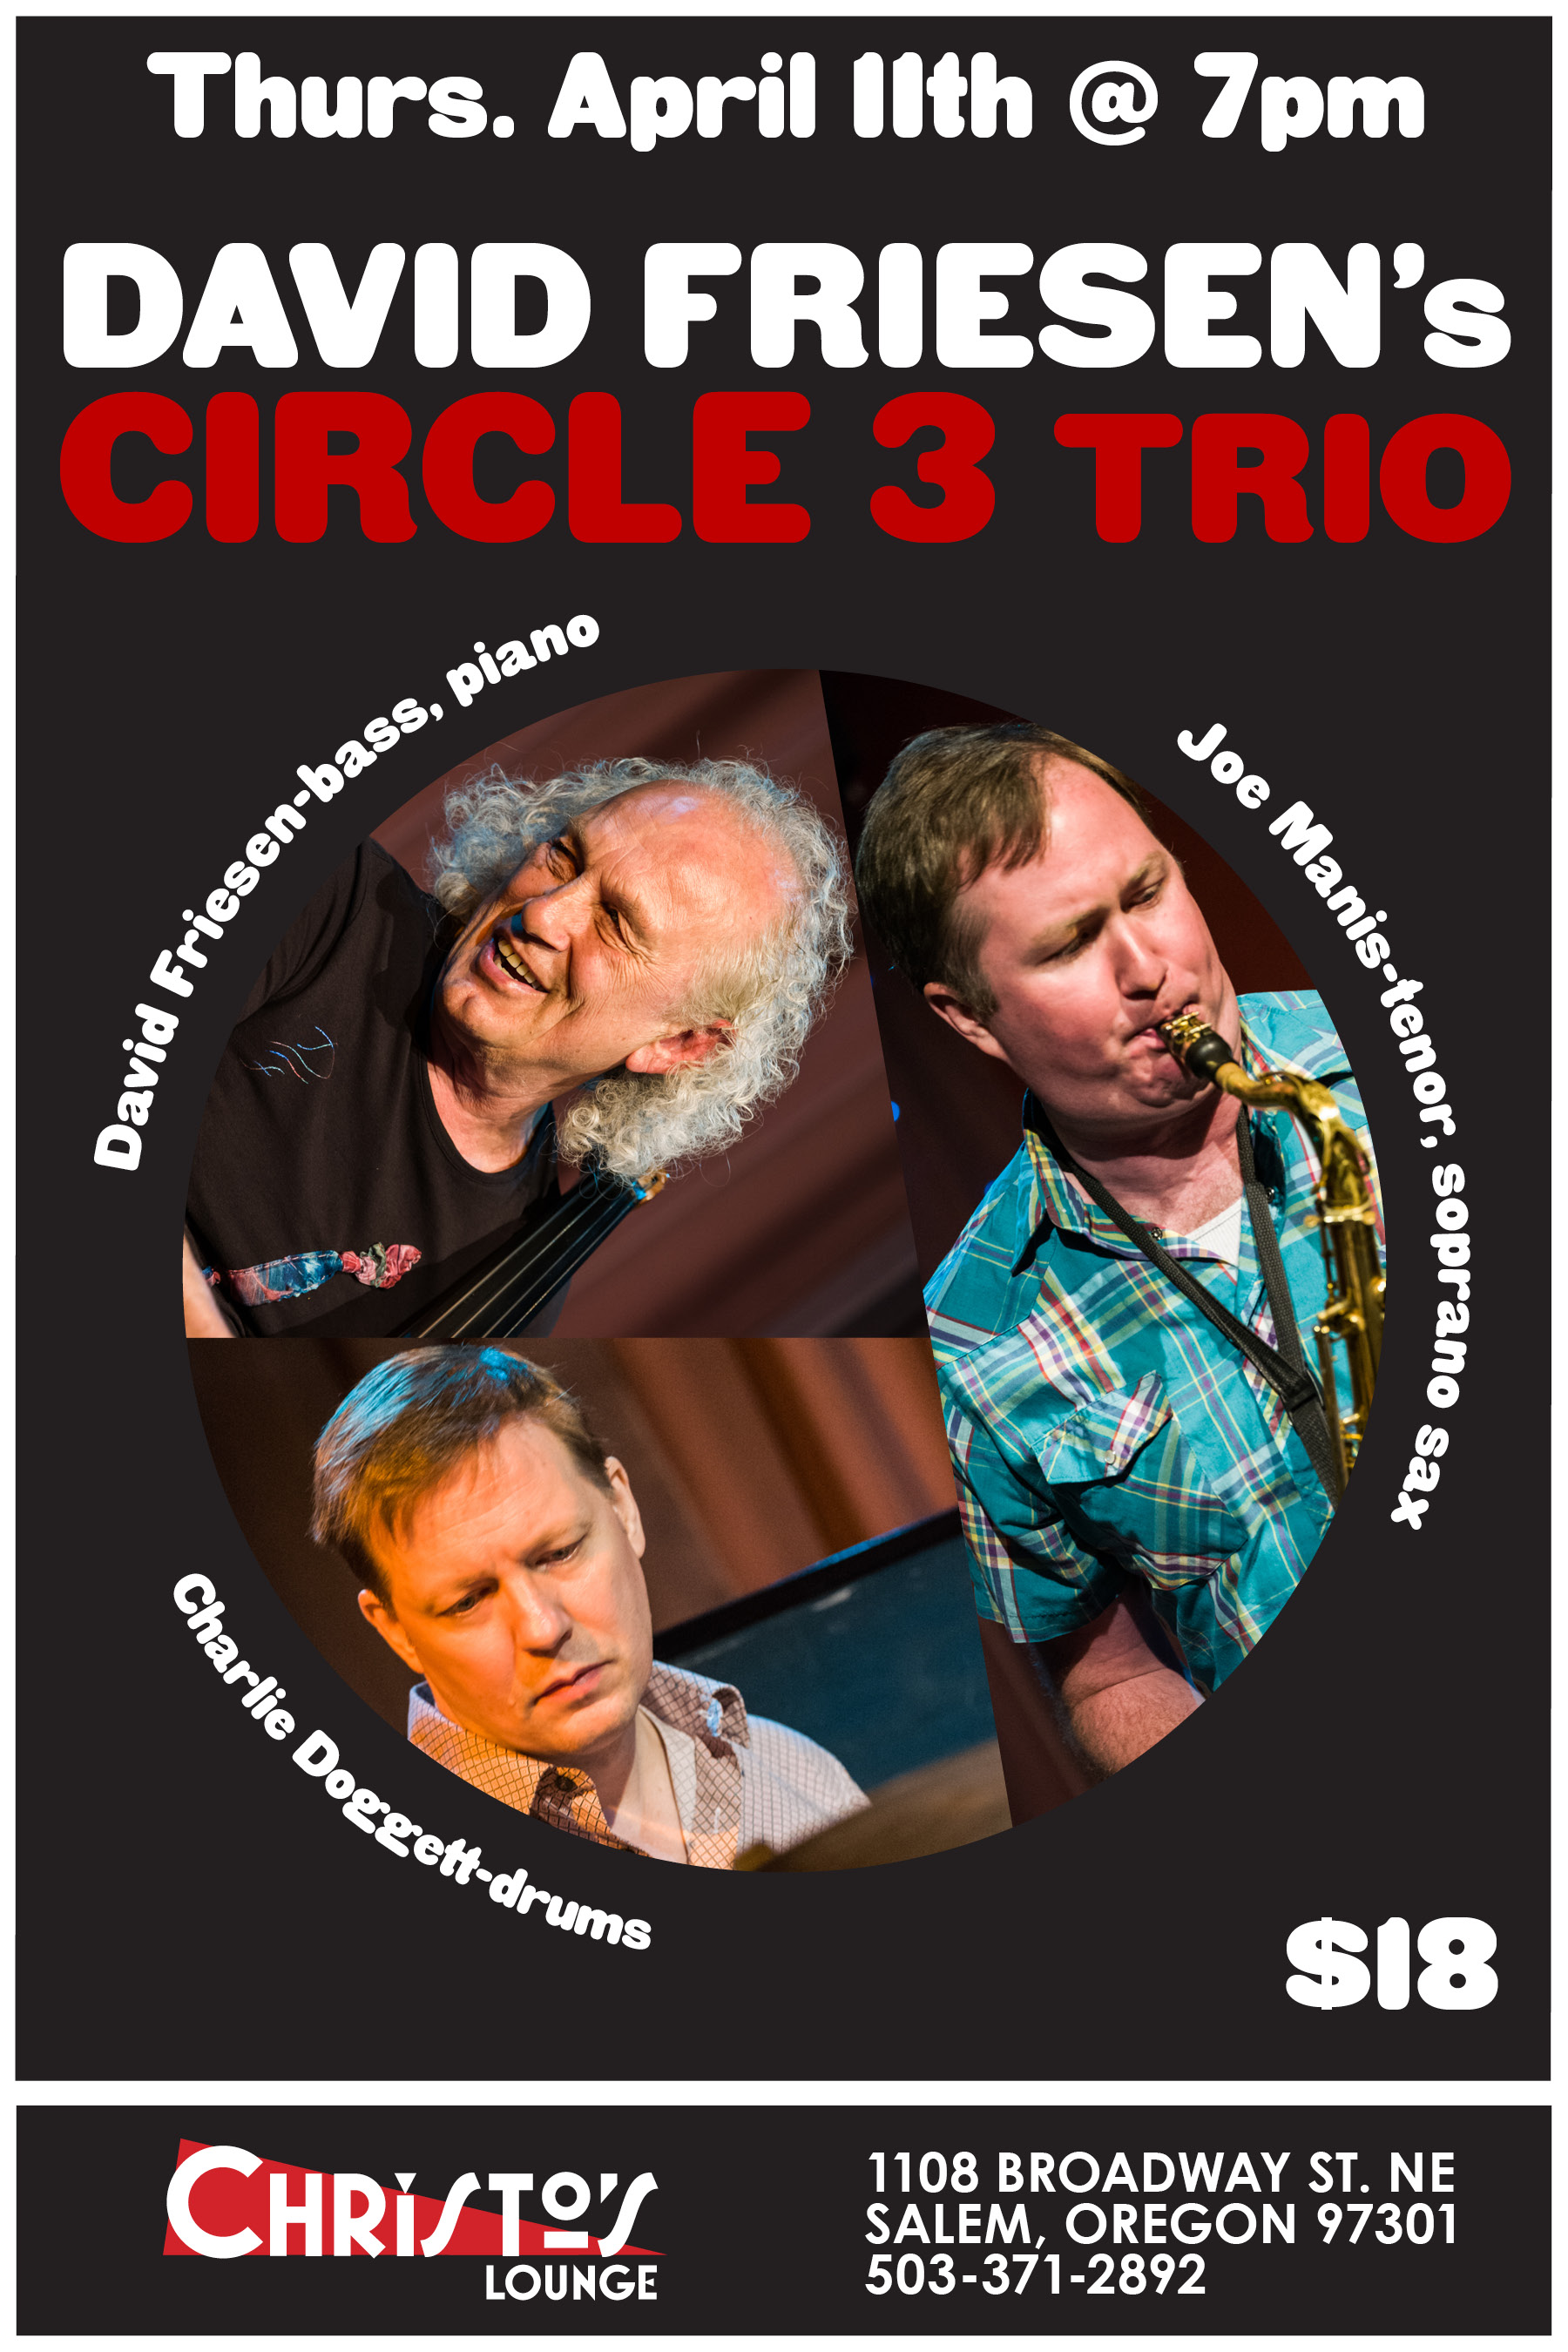 David Friesen’s Circle 3 Trio